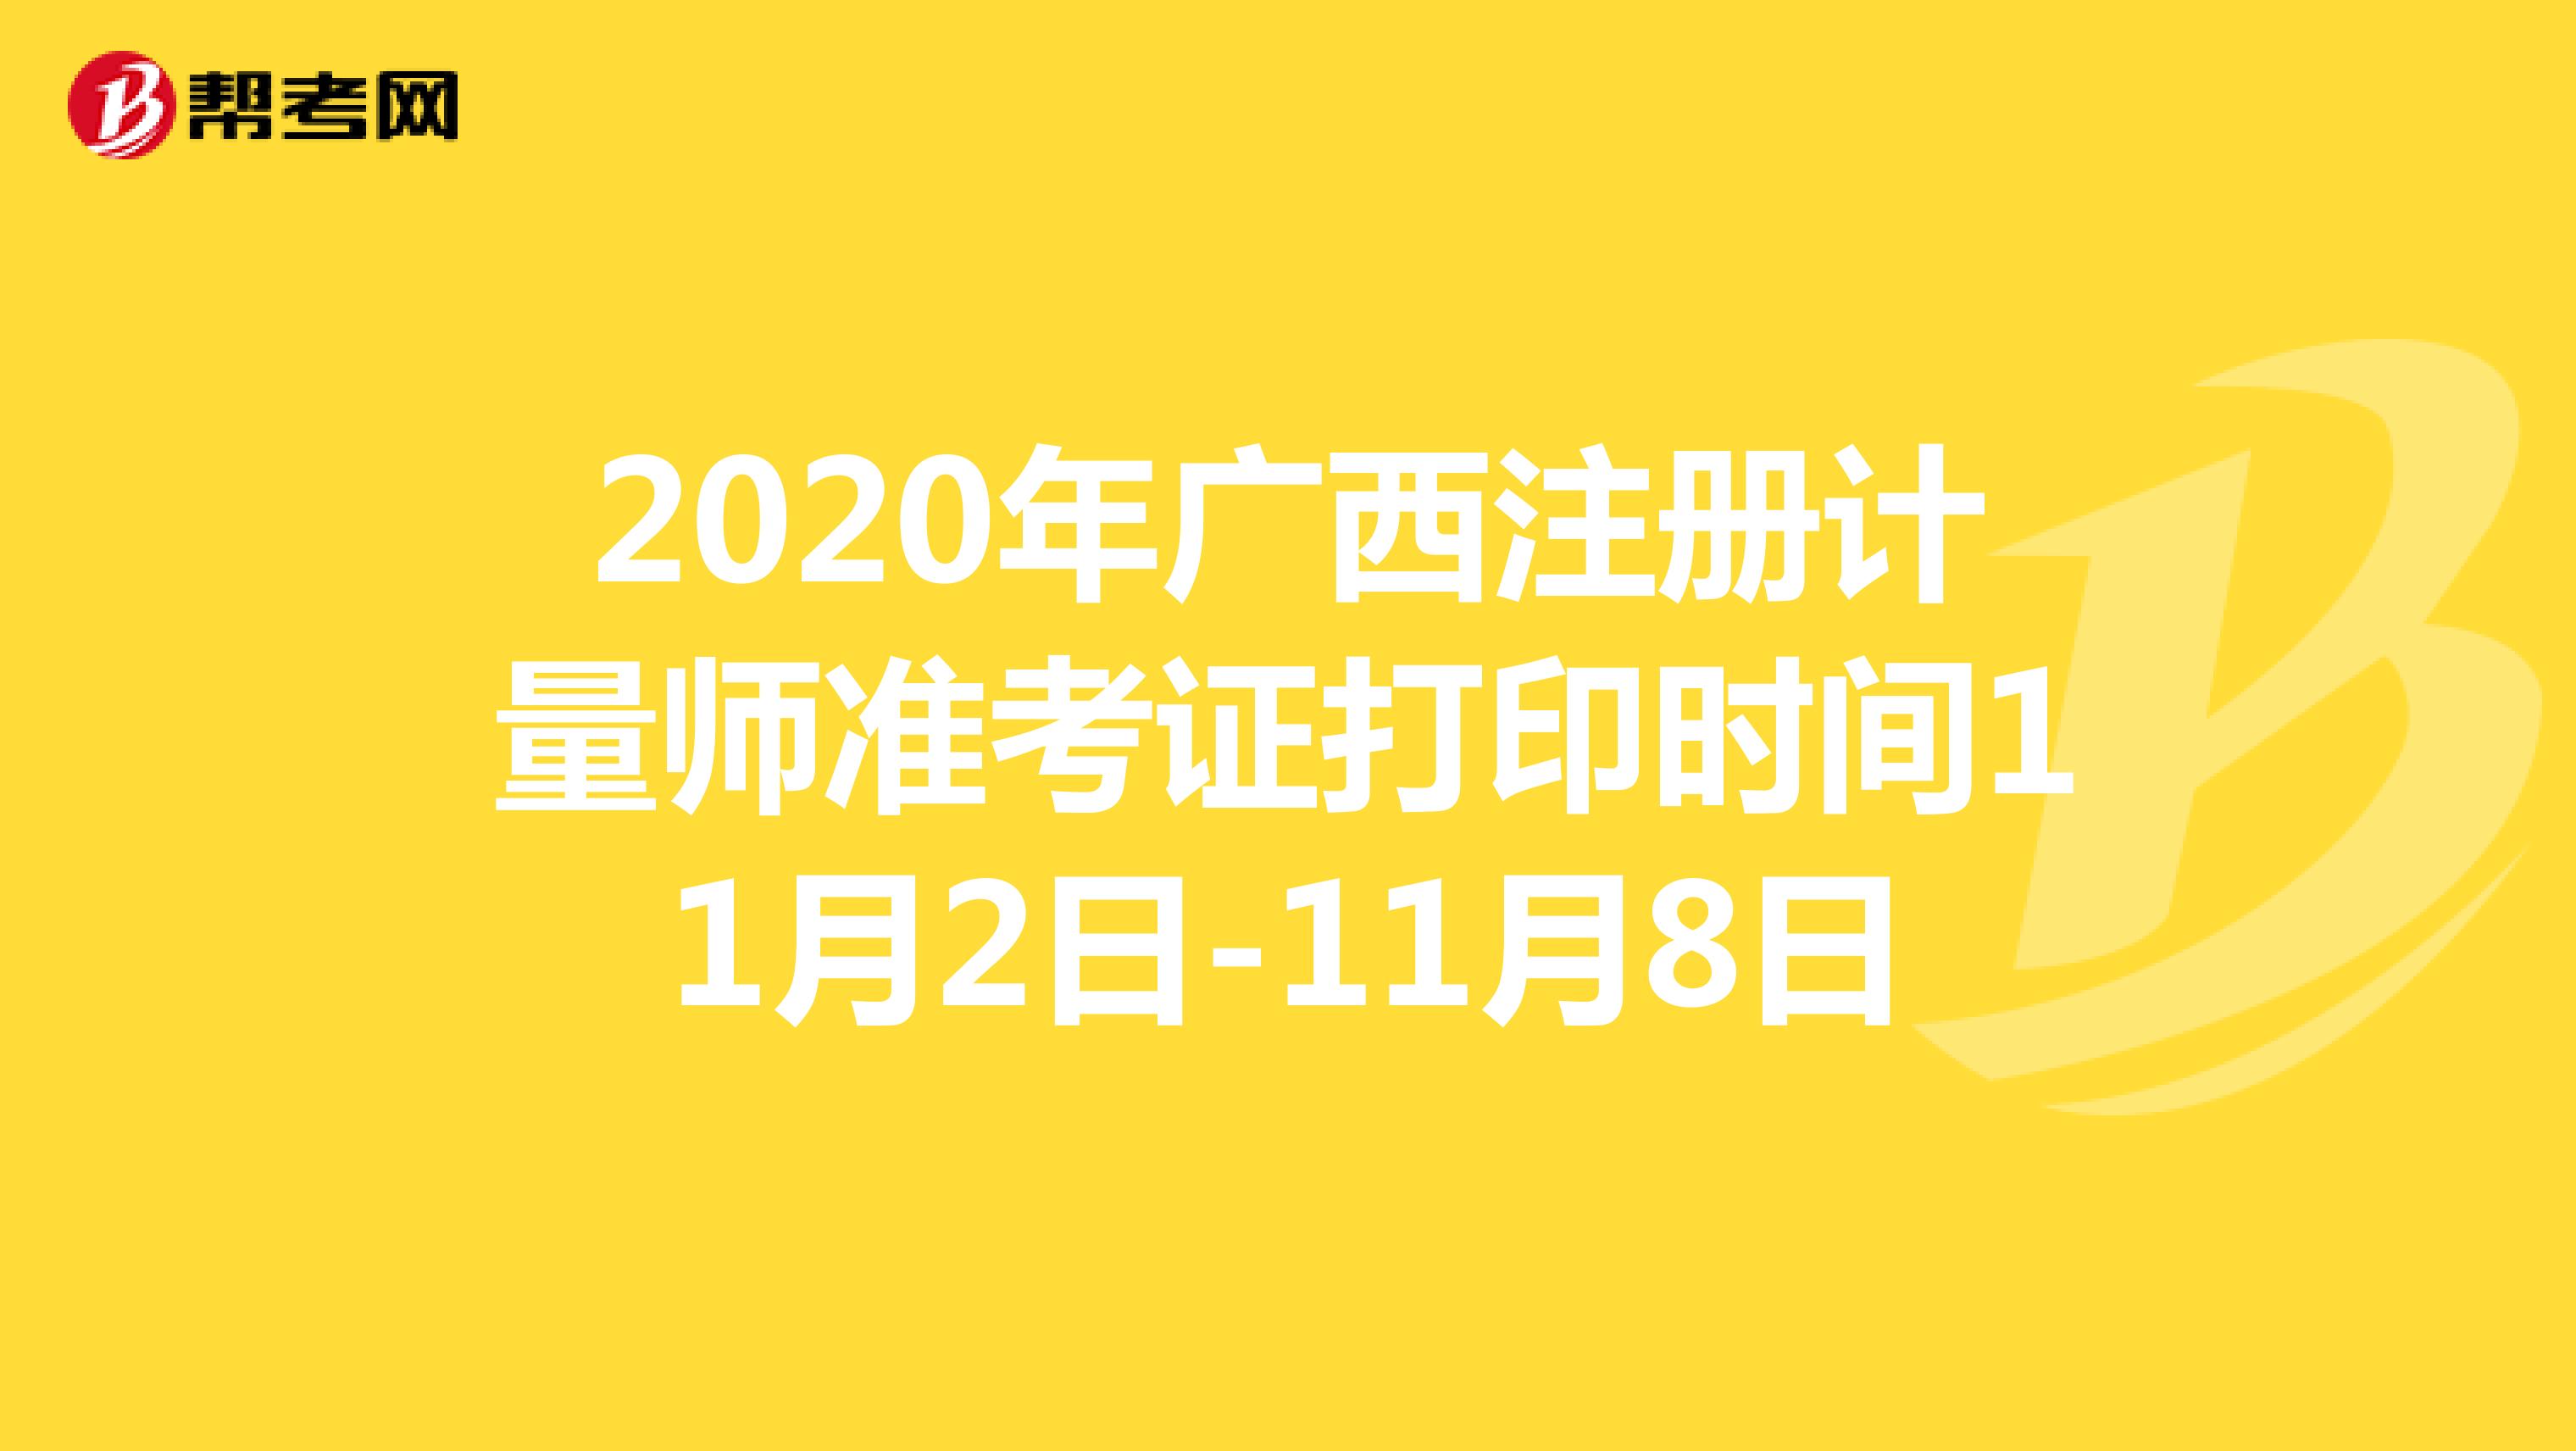 2020年广西注册计量师准考证打印时间11月2日-11月8日